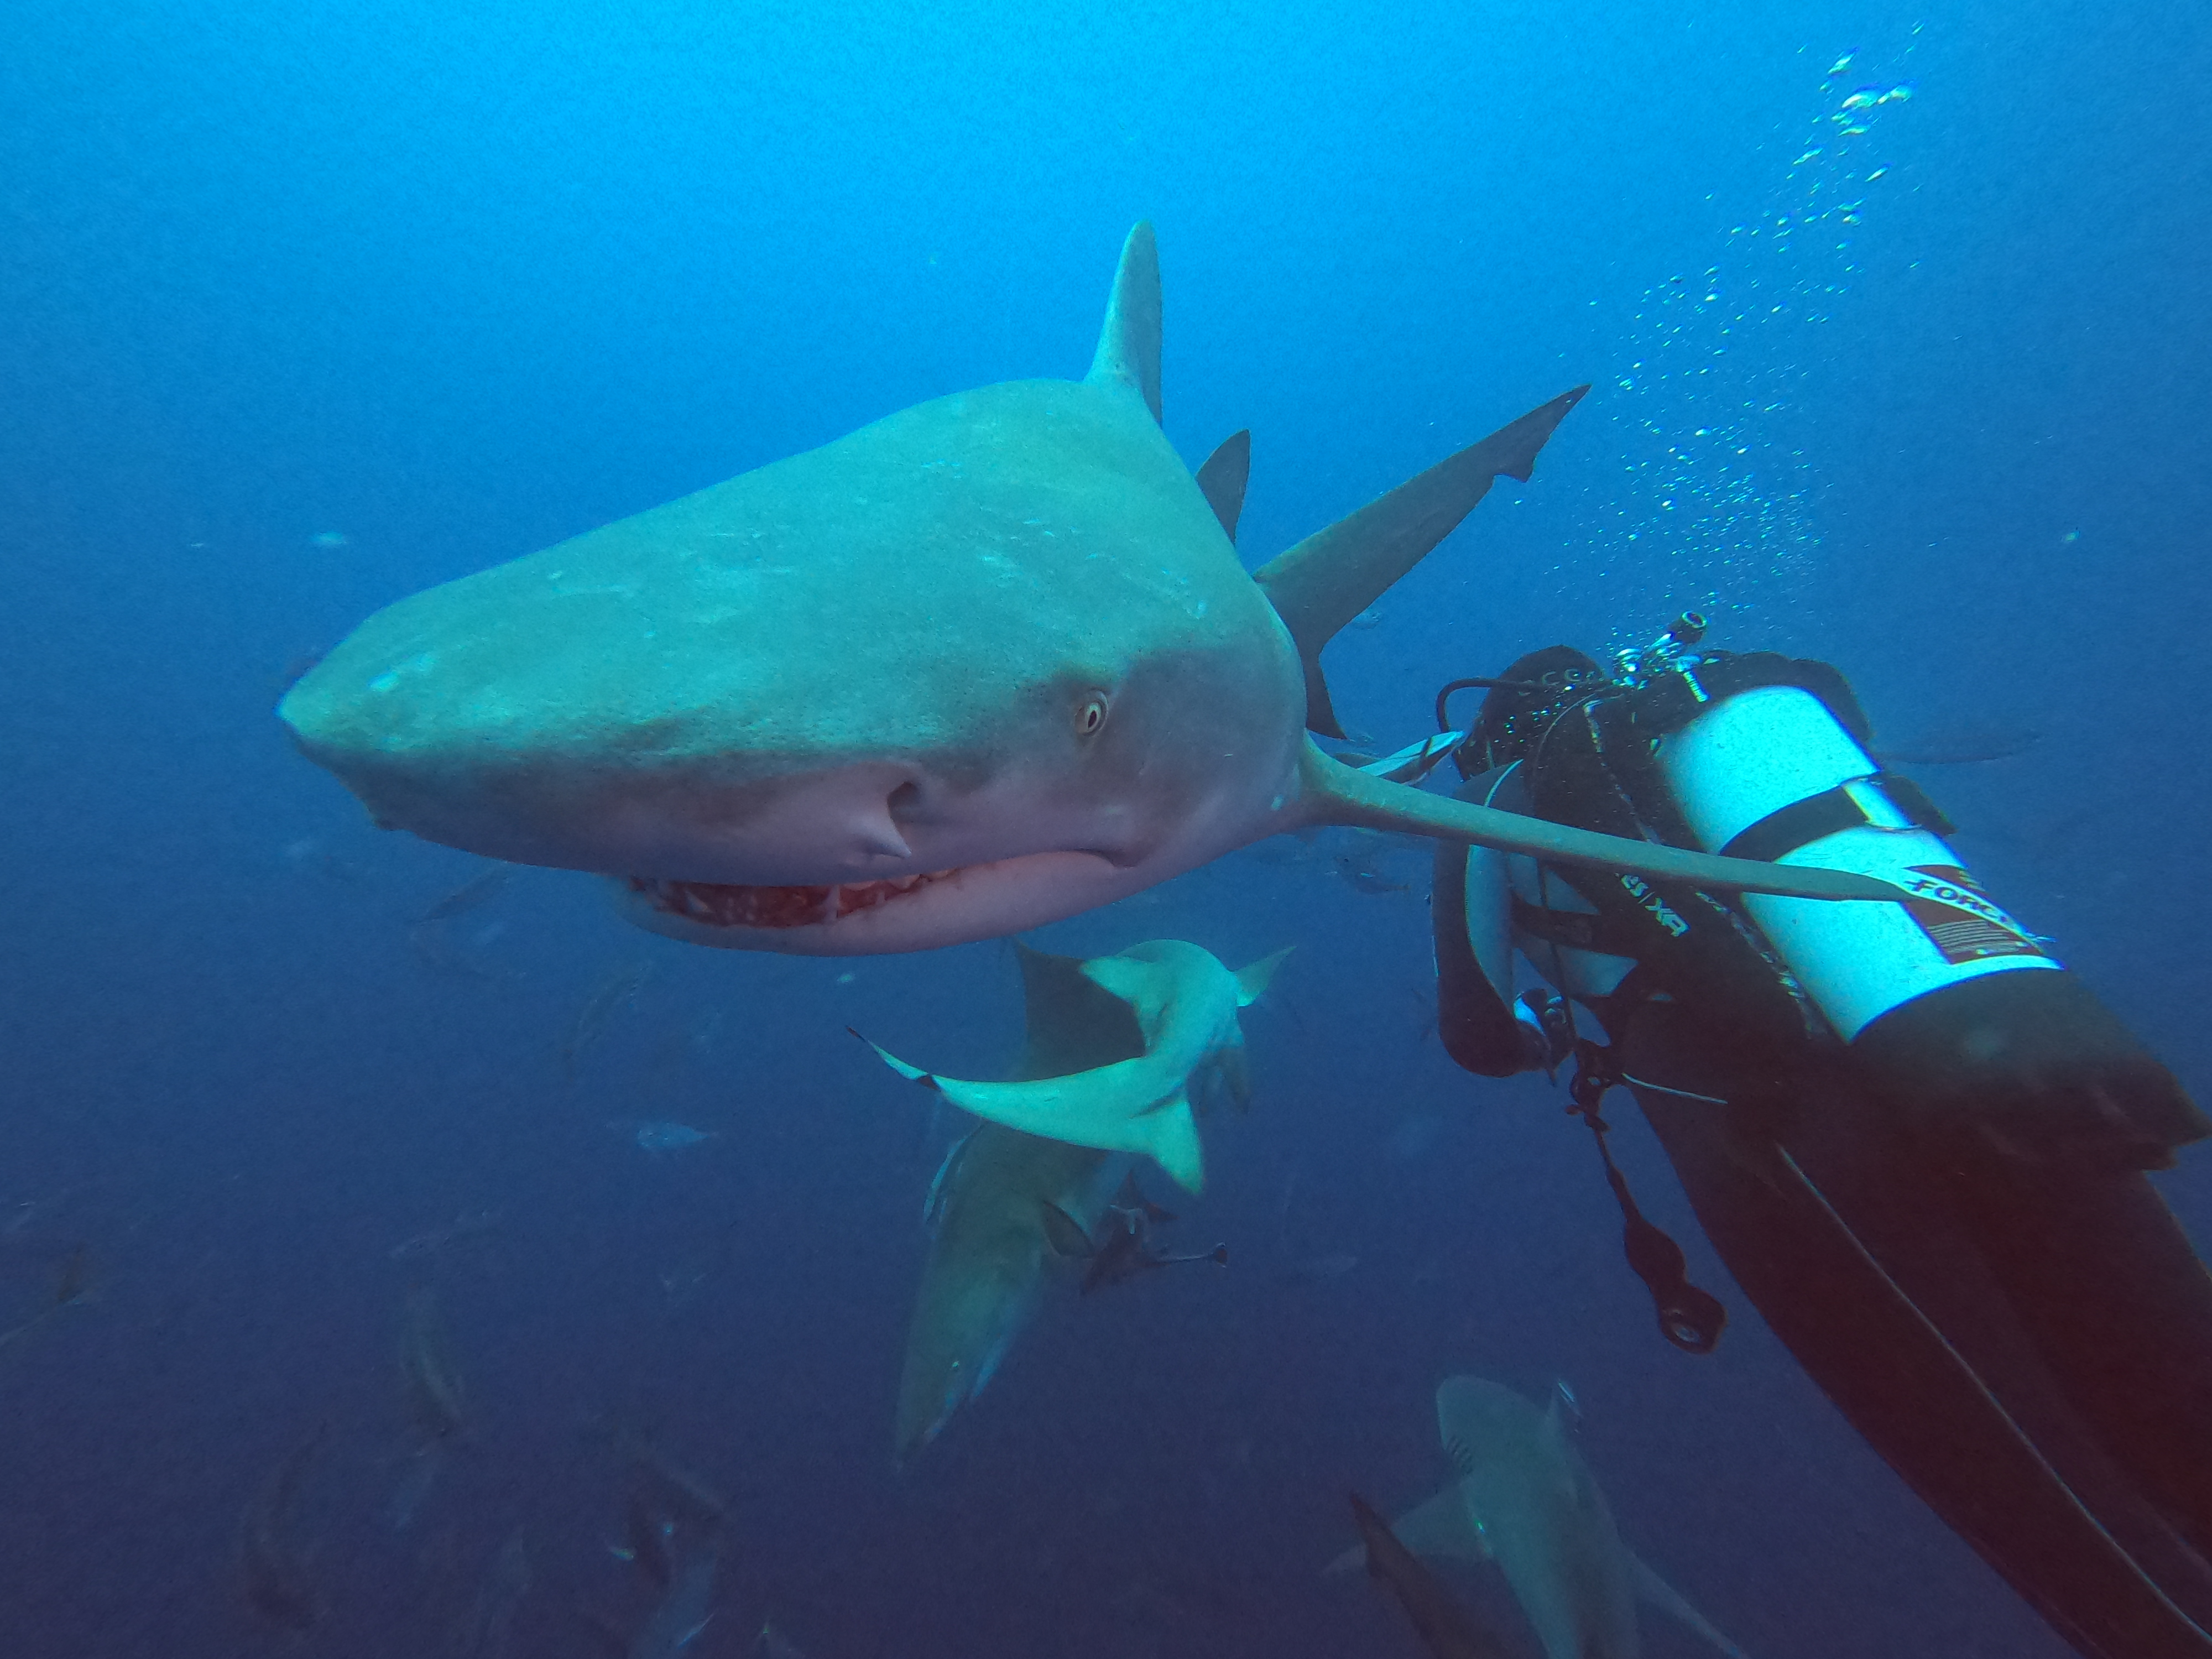 Common Scuba Diving Fears